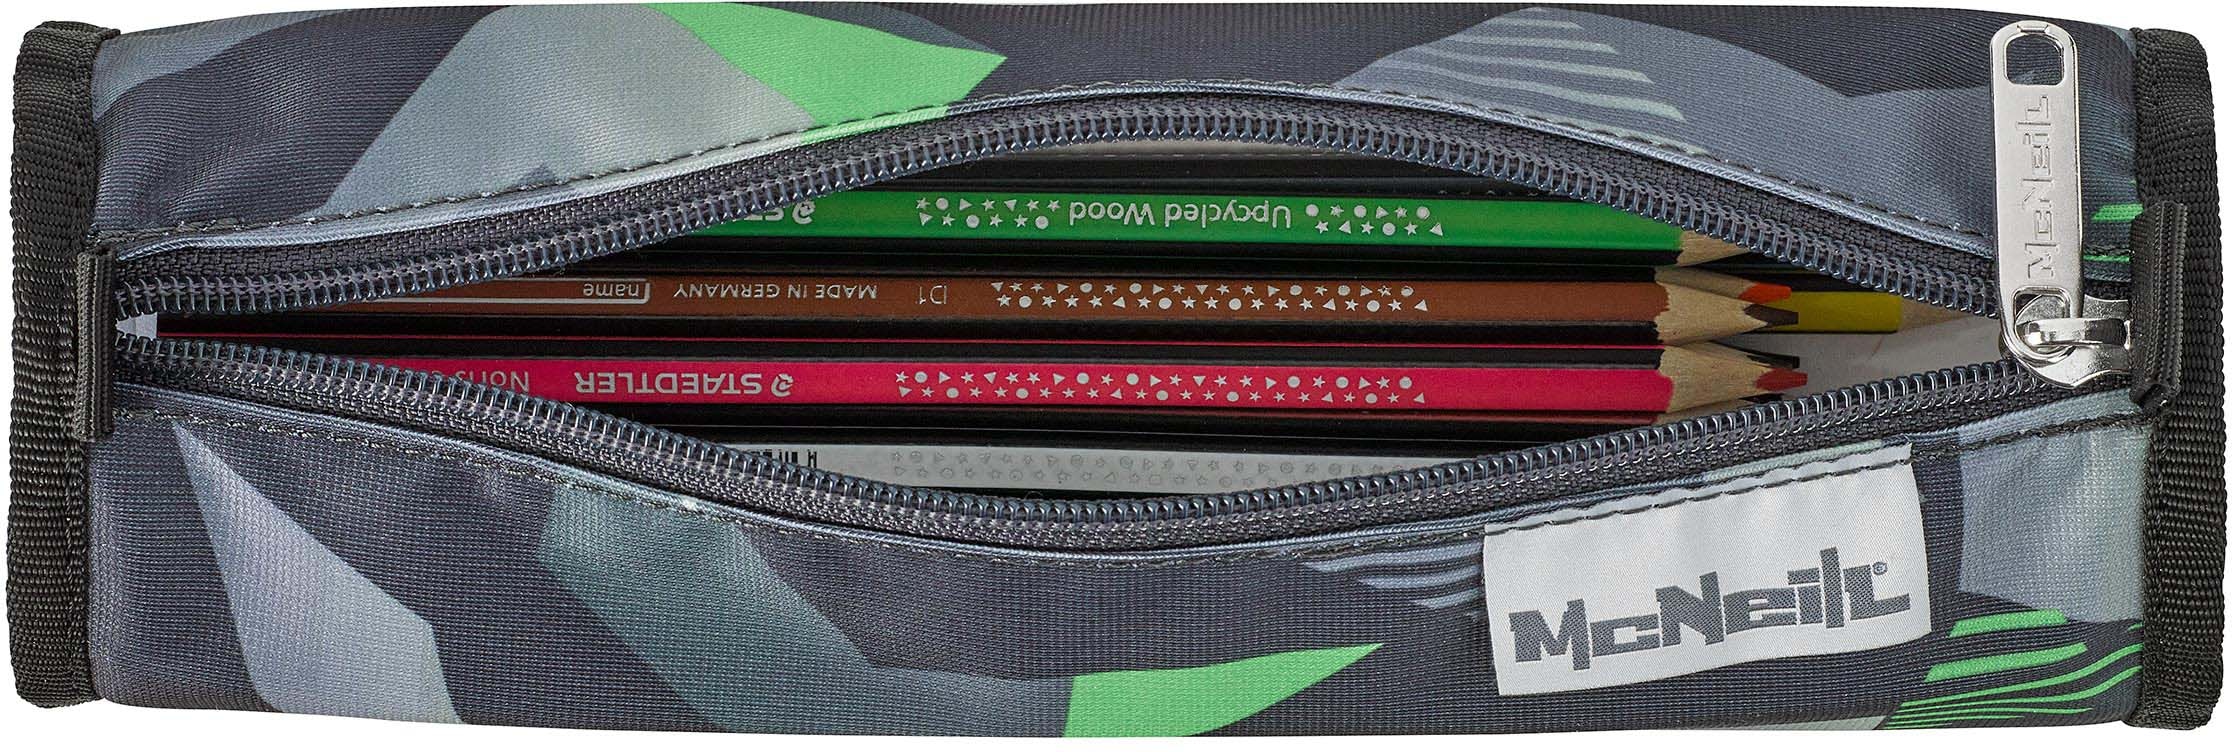 McNeill Schulranzen »mac2, Techno«, reflektierende Streifen auf den Schultergurten-retroreflektierende Flächen, inkl. Federmäppchen, Turnbeutel, Schlamperrolle & Motivmagnet